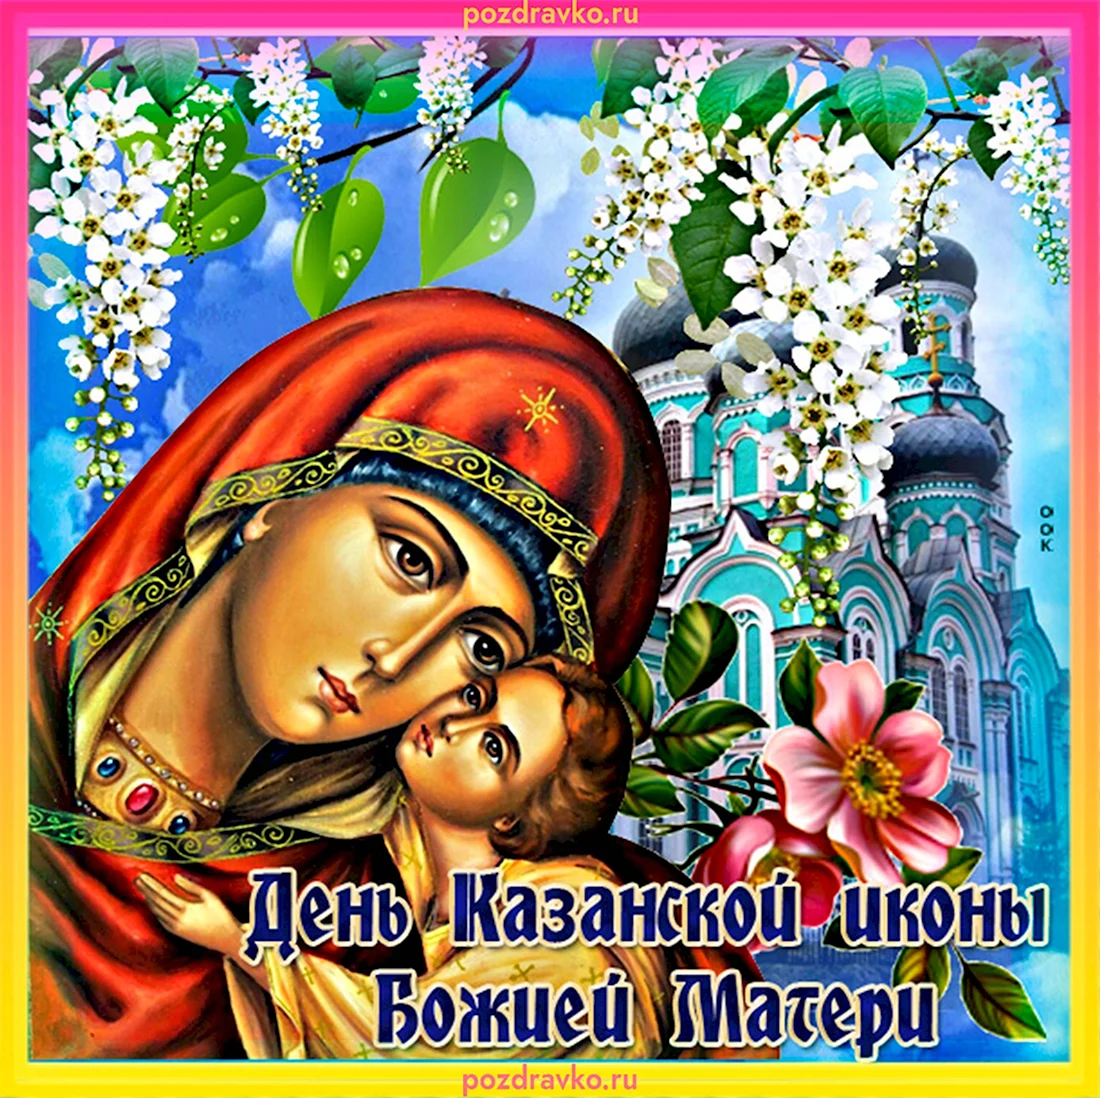 Открытки в честь иконы Казанской Божьей матери. Открытка, картинка с поздравлением, с праздником